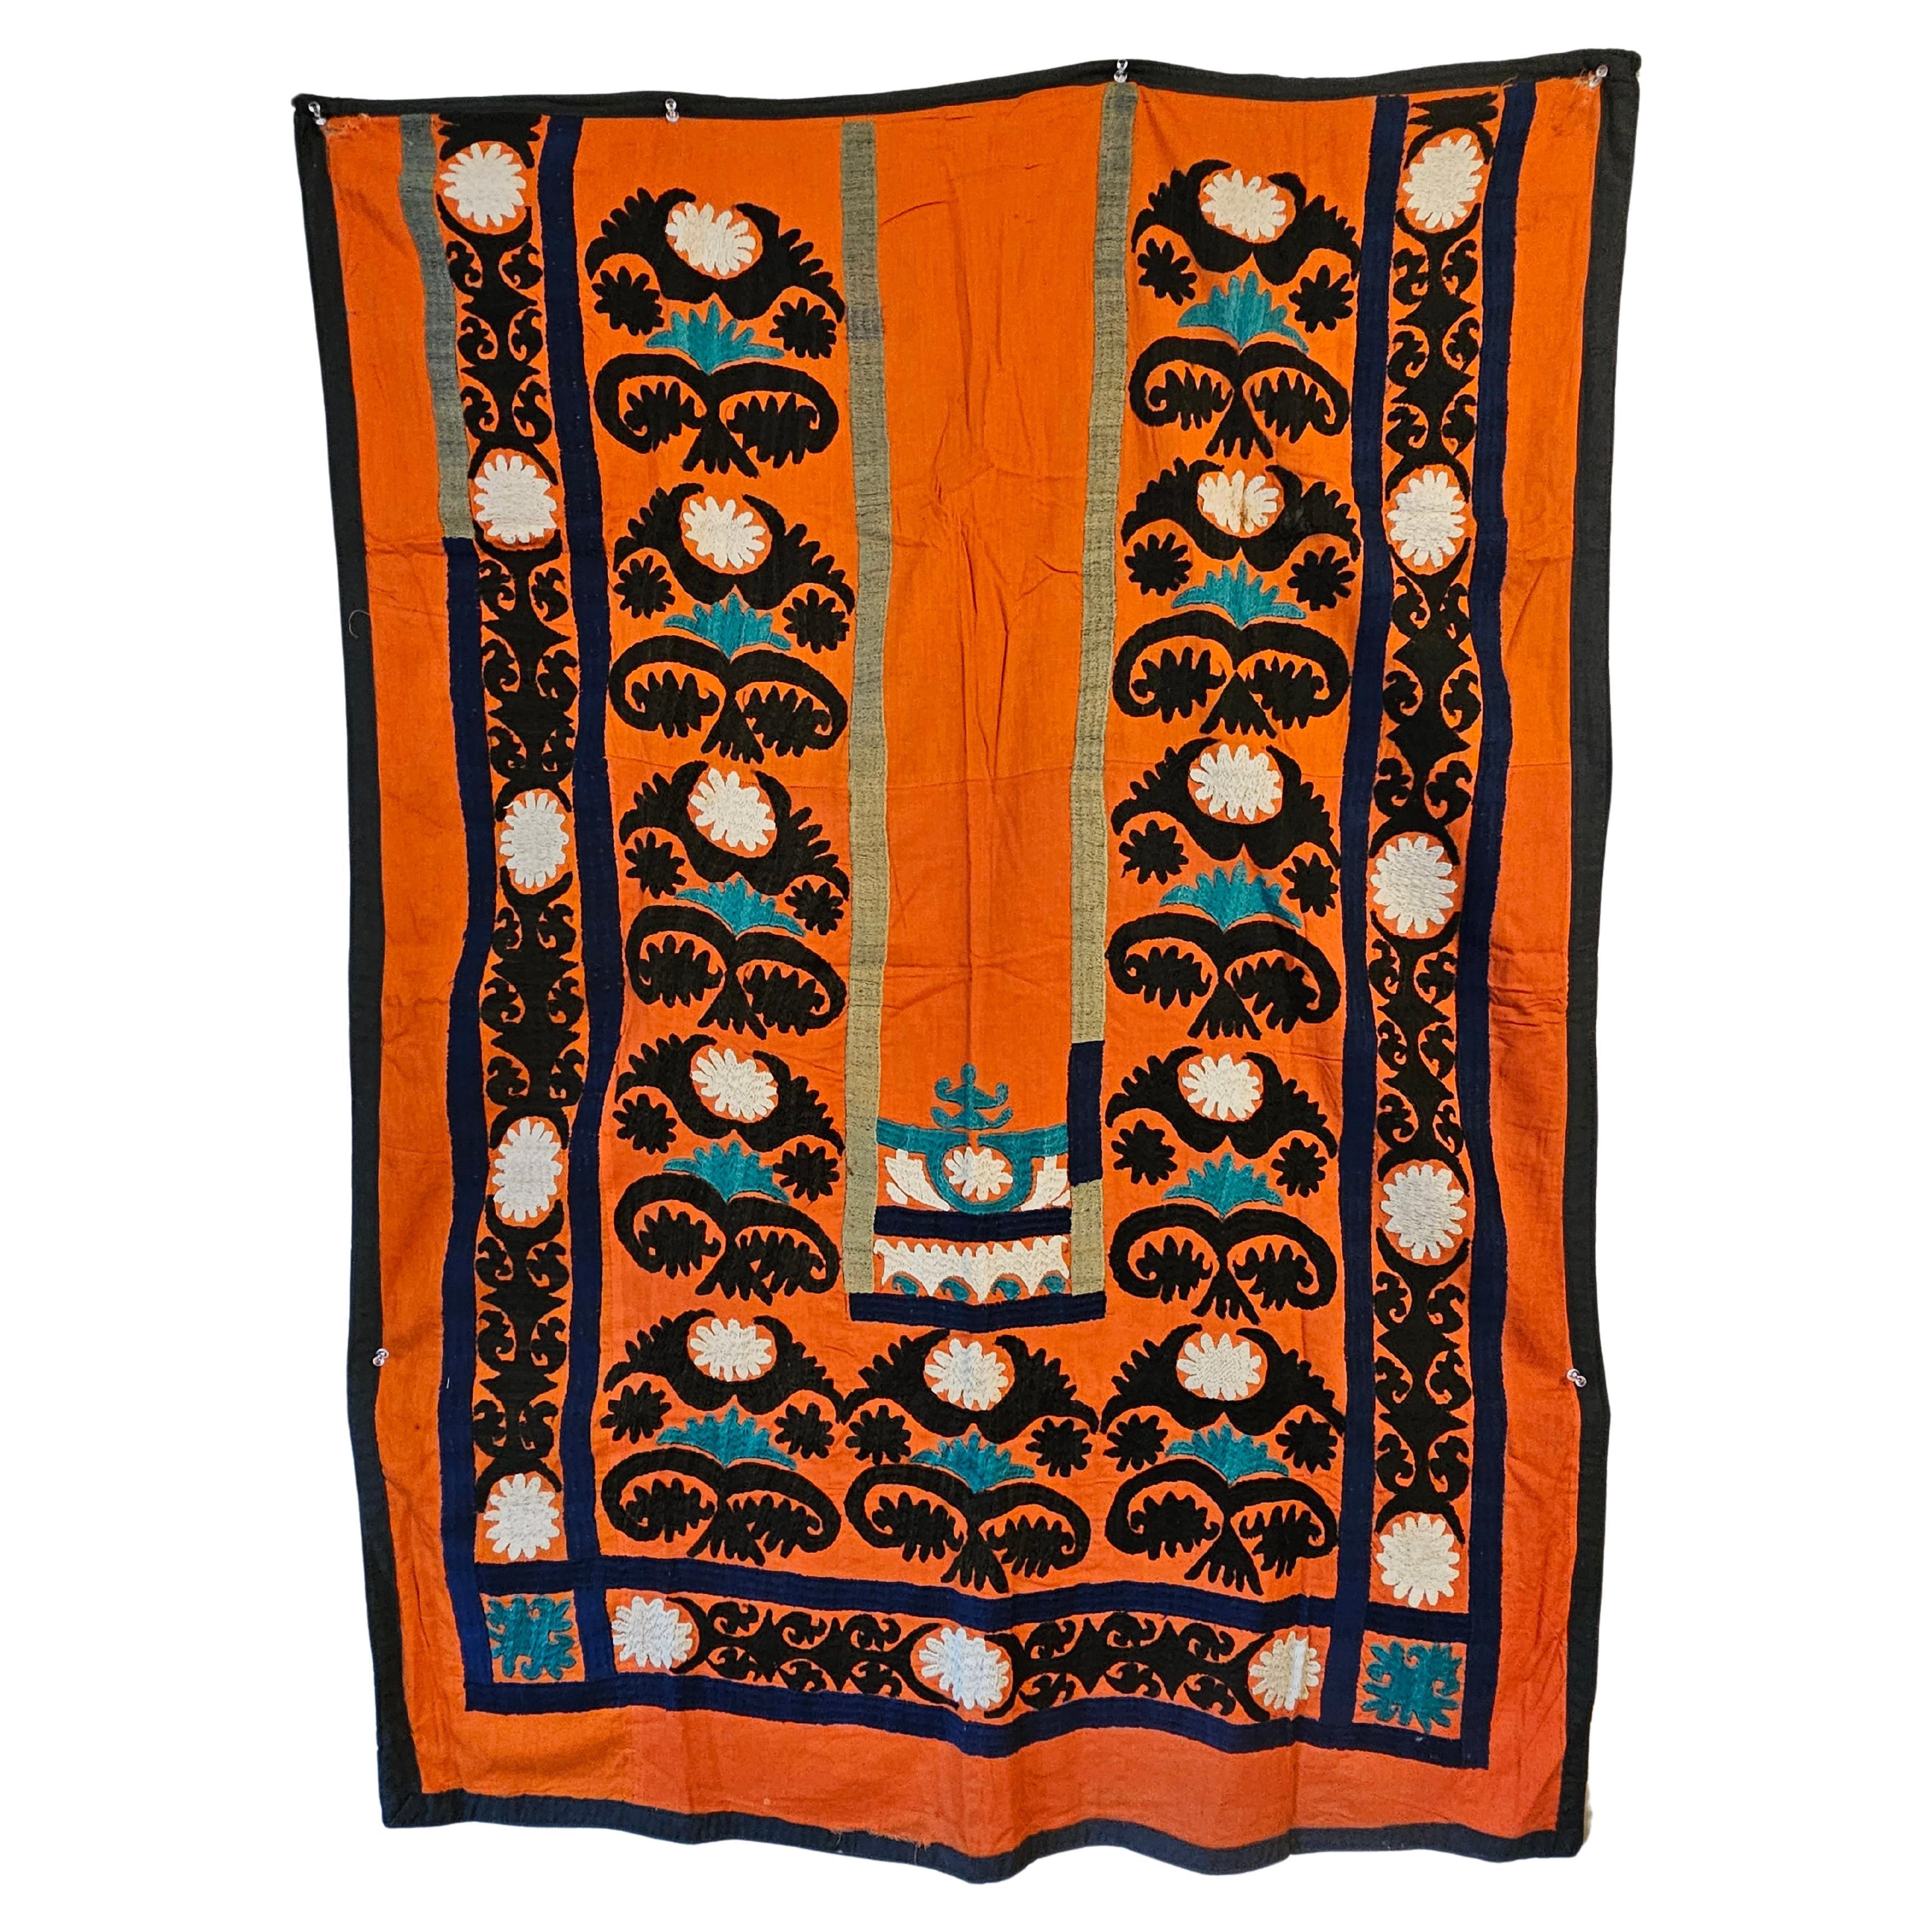 Bestickter Suzani-Gebetteppich aus Seide und Baumwolle aus Tashkent des frühen 20. Jahrhunderts, geschätzt